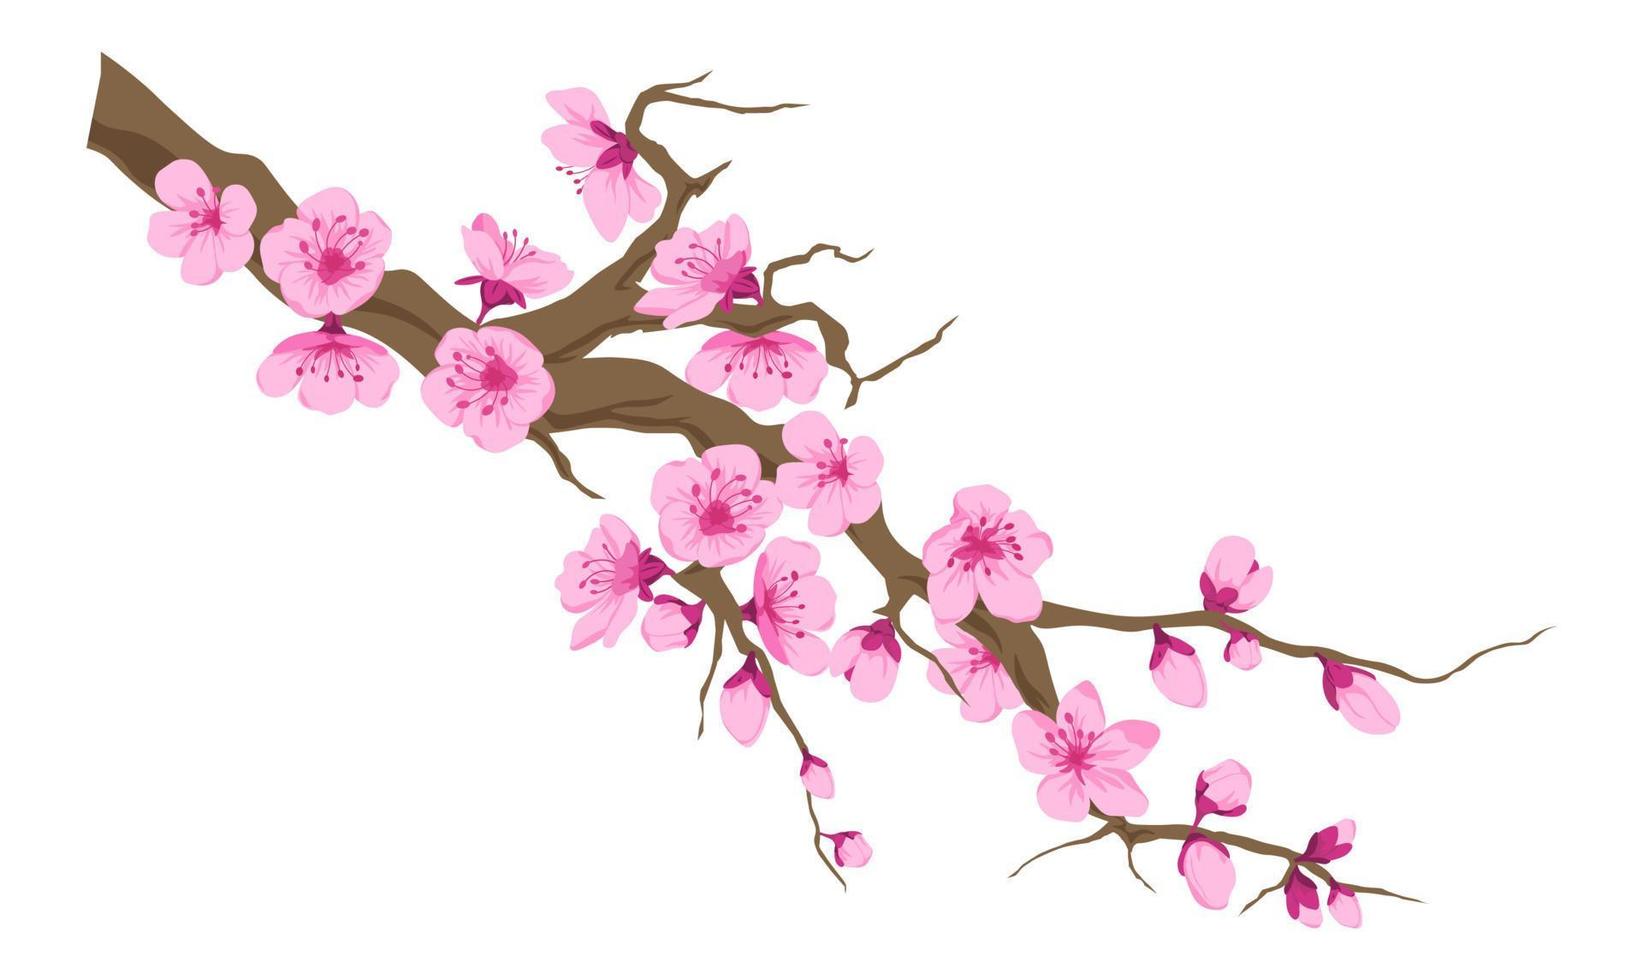 Kirschblütenzweig mit blühenden Blumen vektor